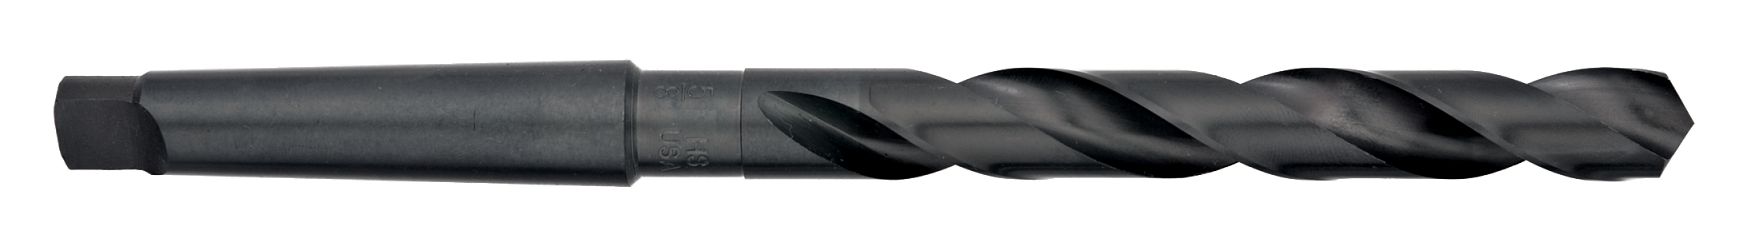 Drills-High Speed Steel-Taper Shank-118° Point